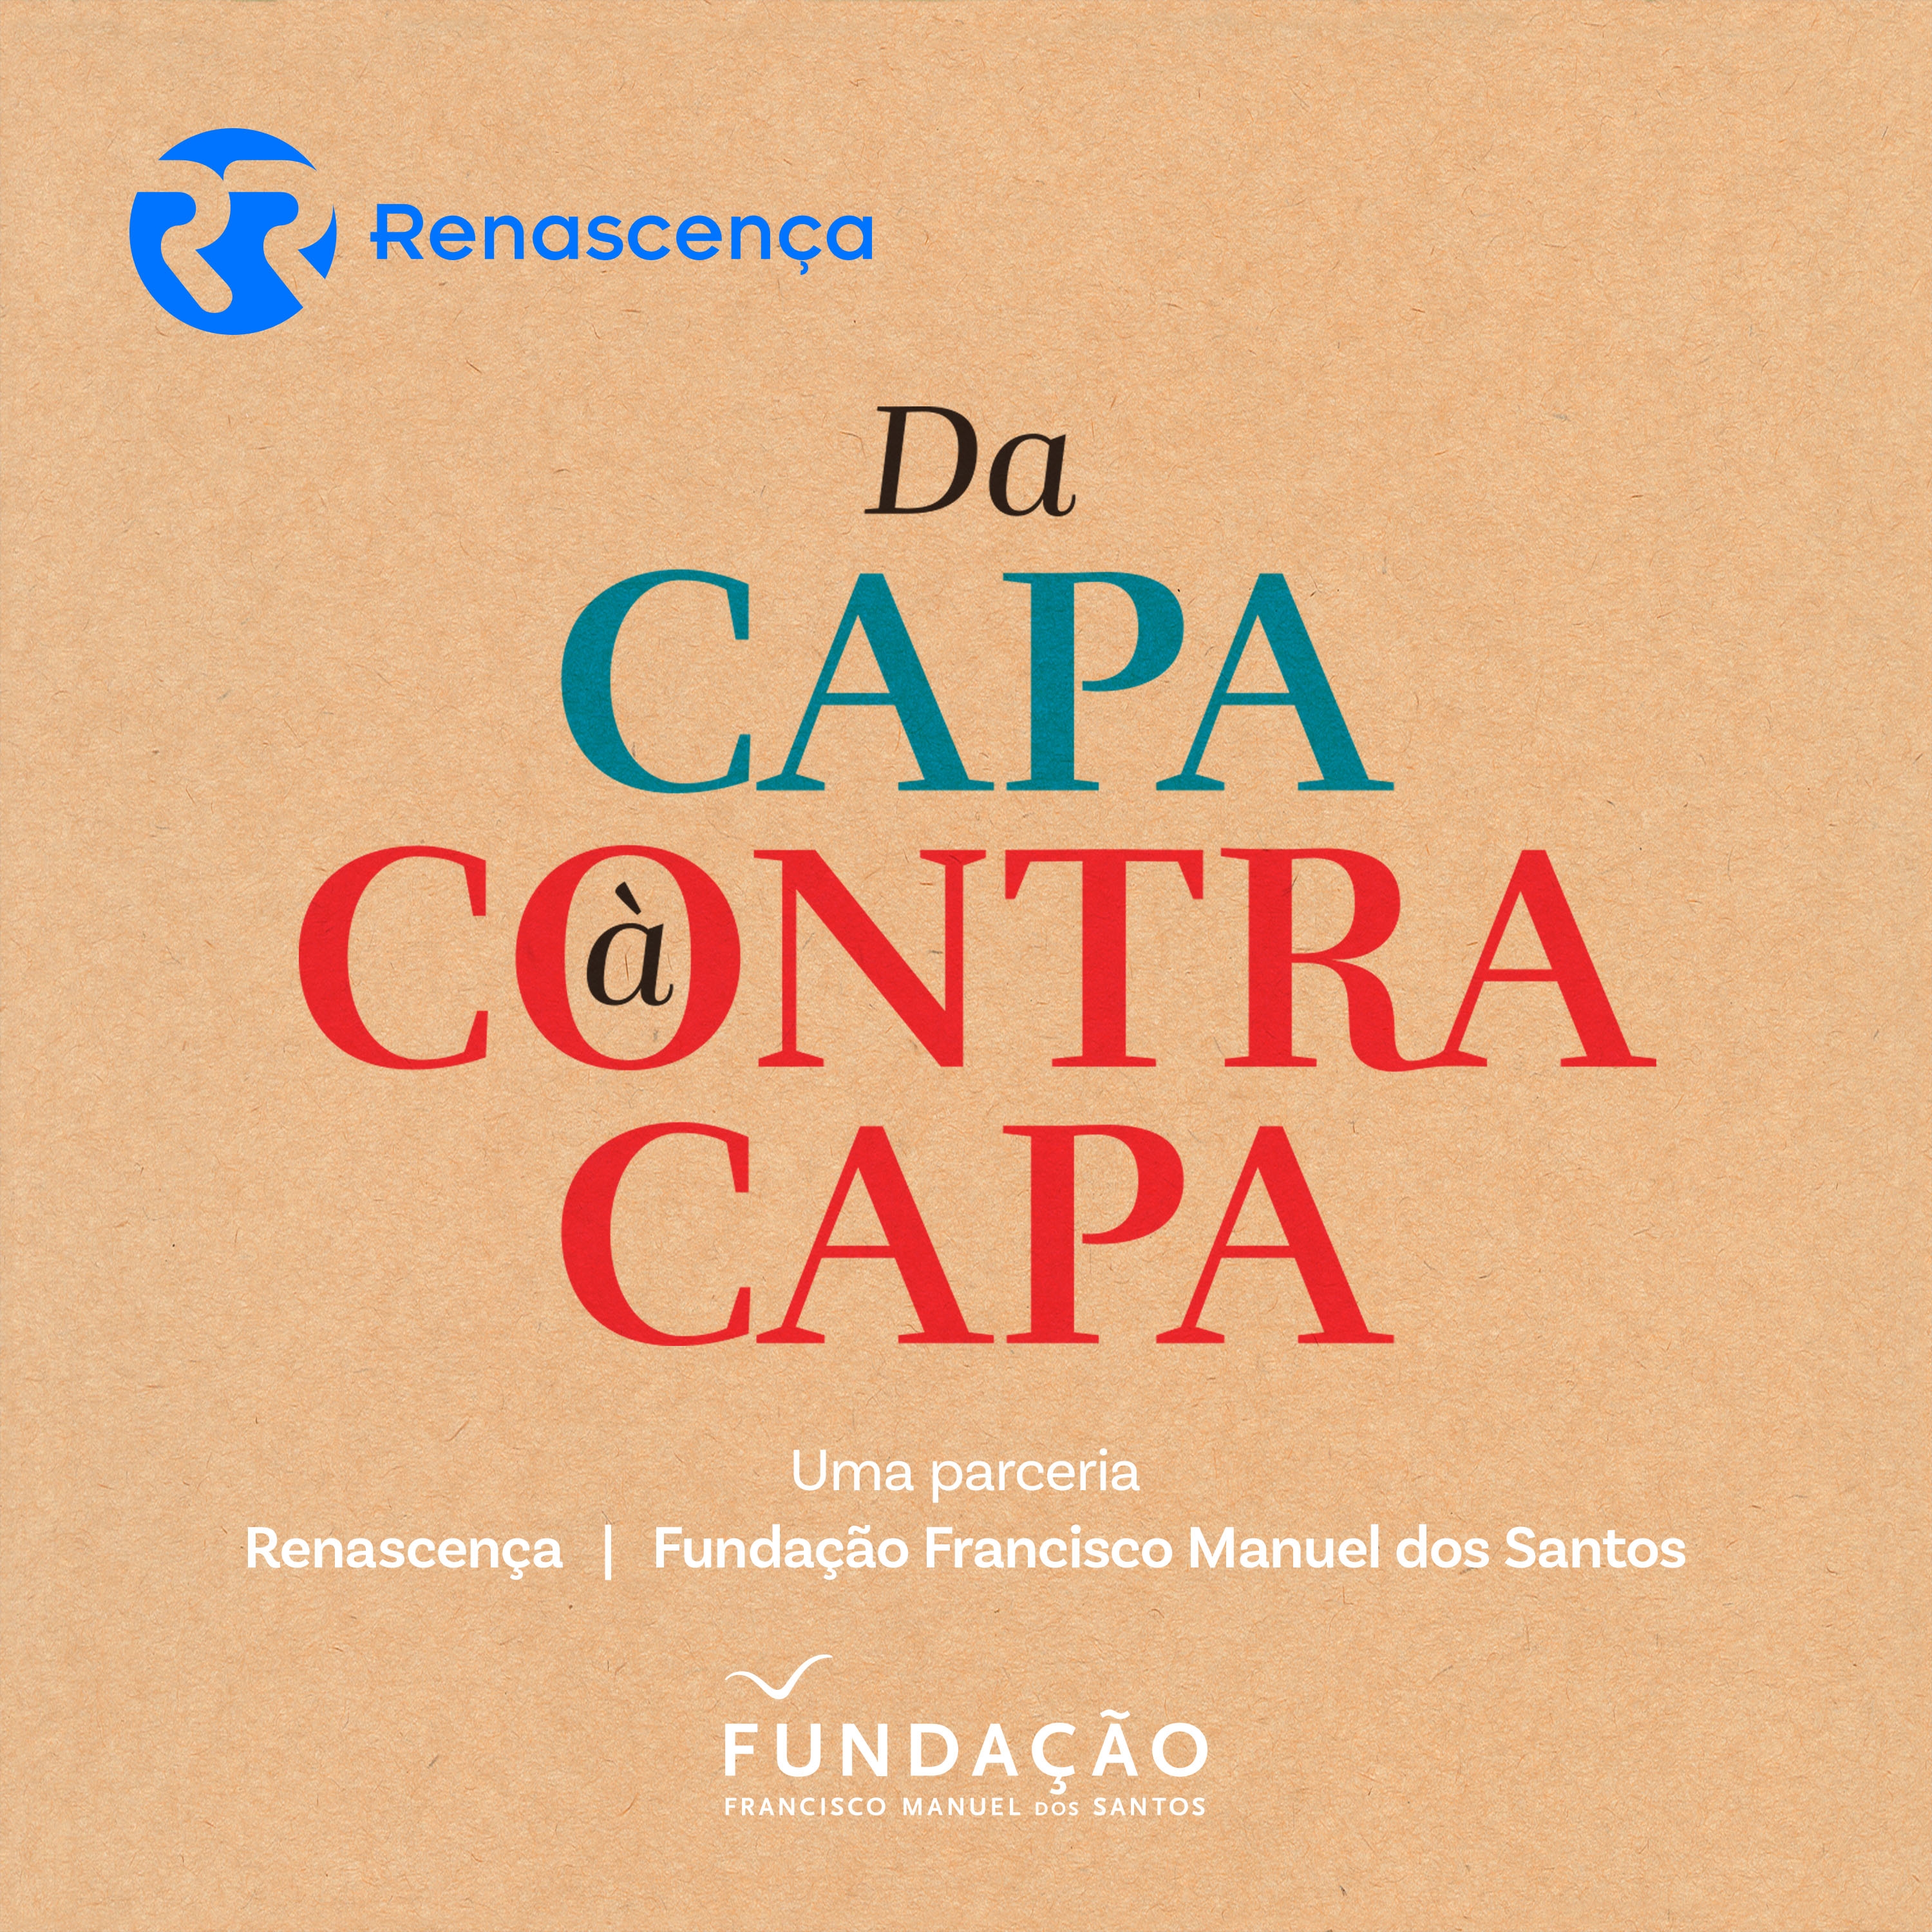 Da Capa à Contracapa - Racismo em Portugal - 16/03/2019